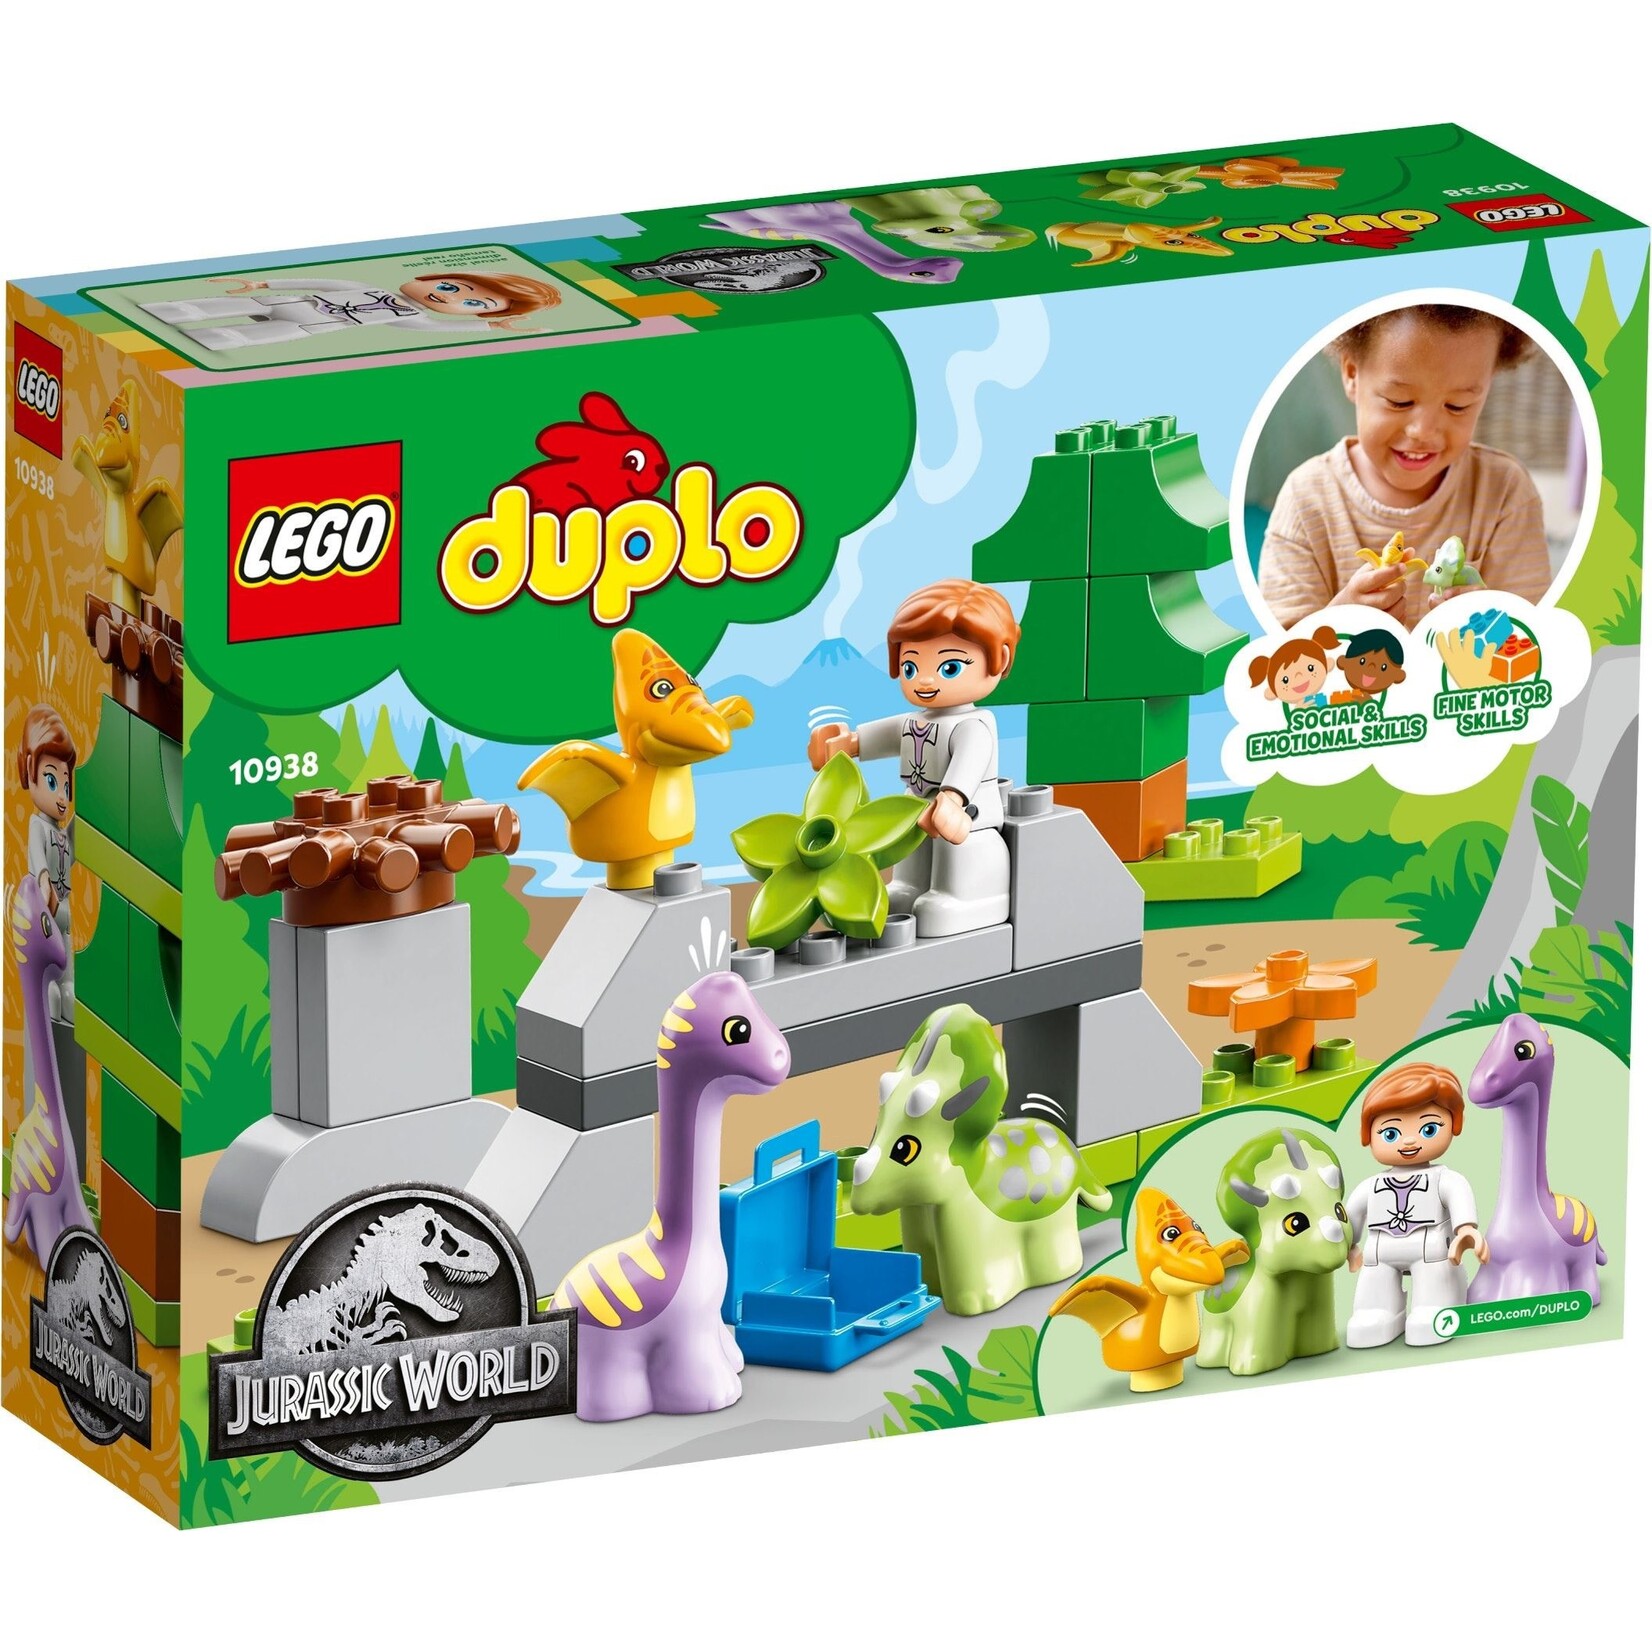 LEGO Dpulo Dinosaurus creche - 10938